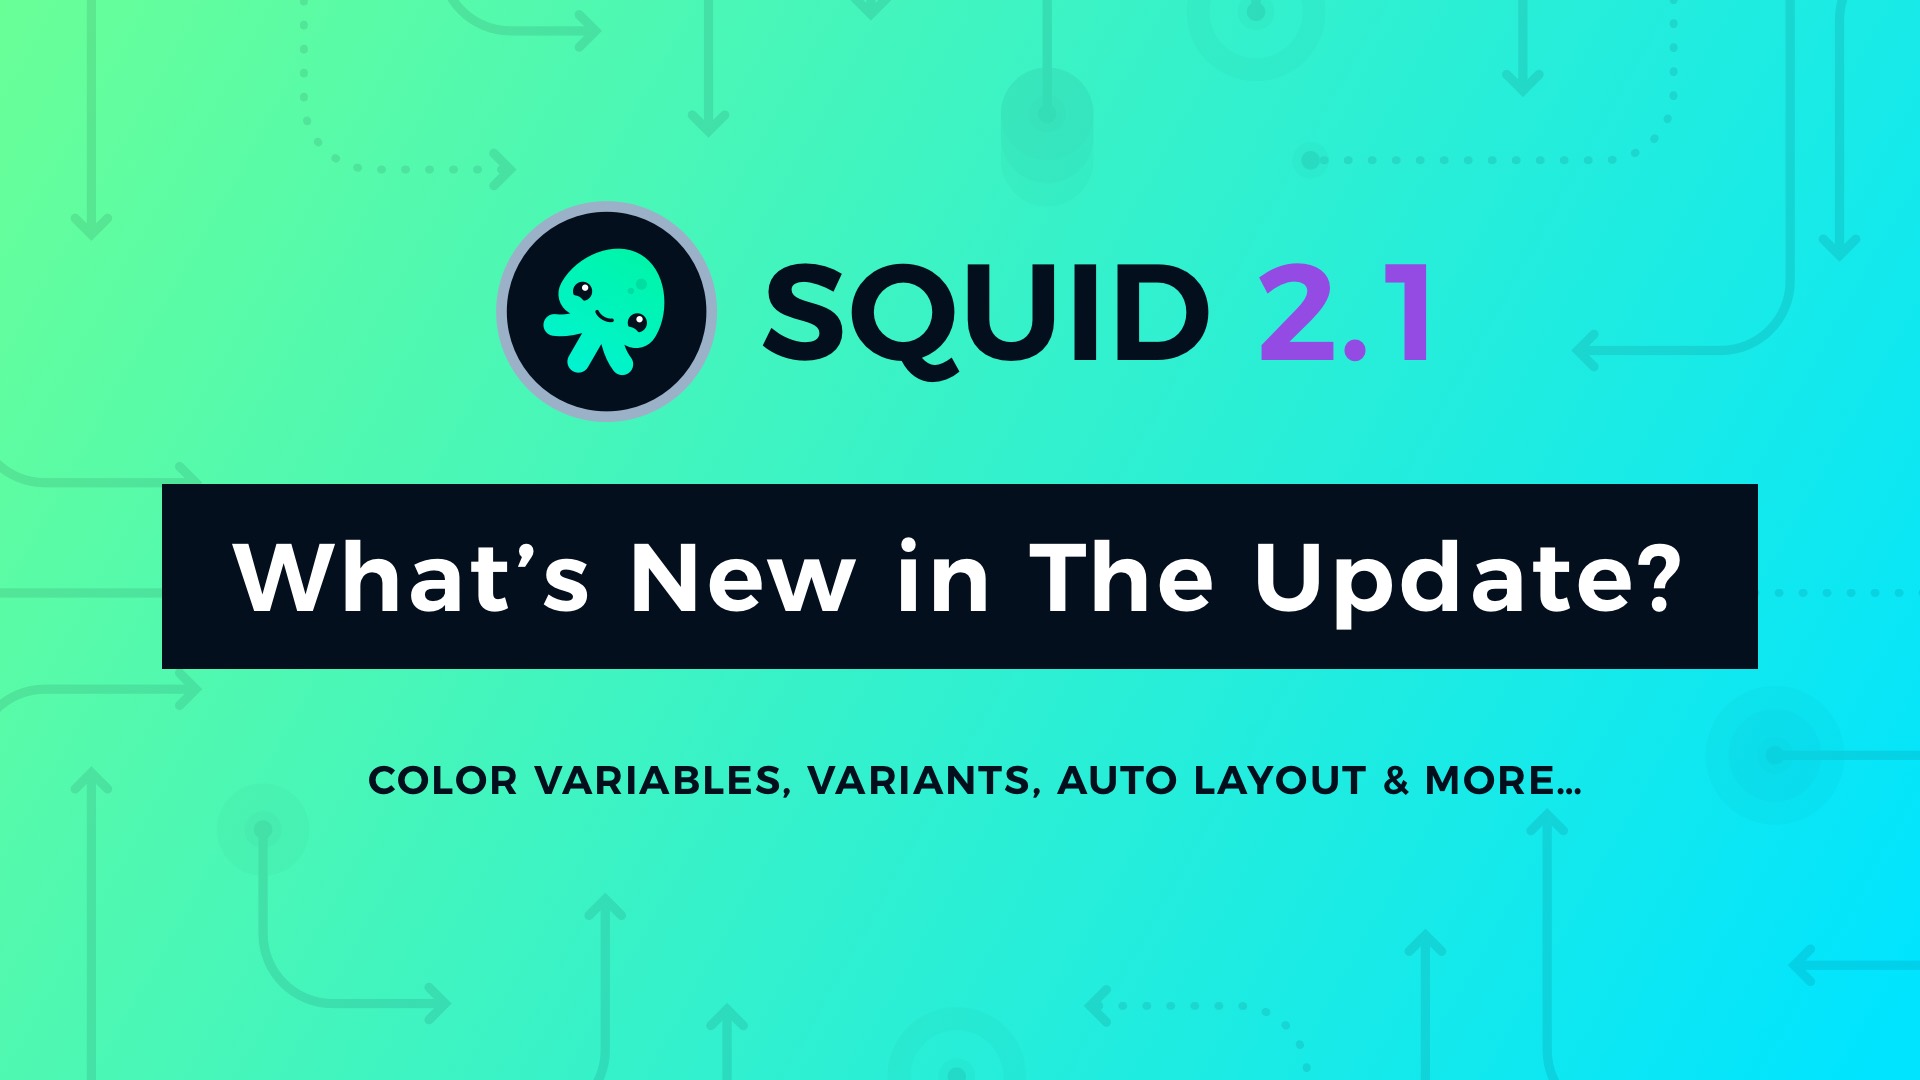 SQUID 2.1 featured